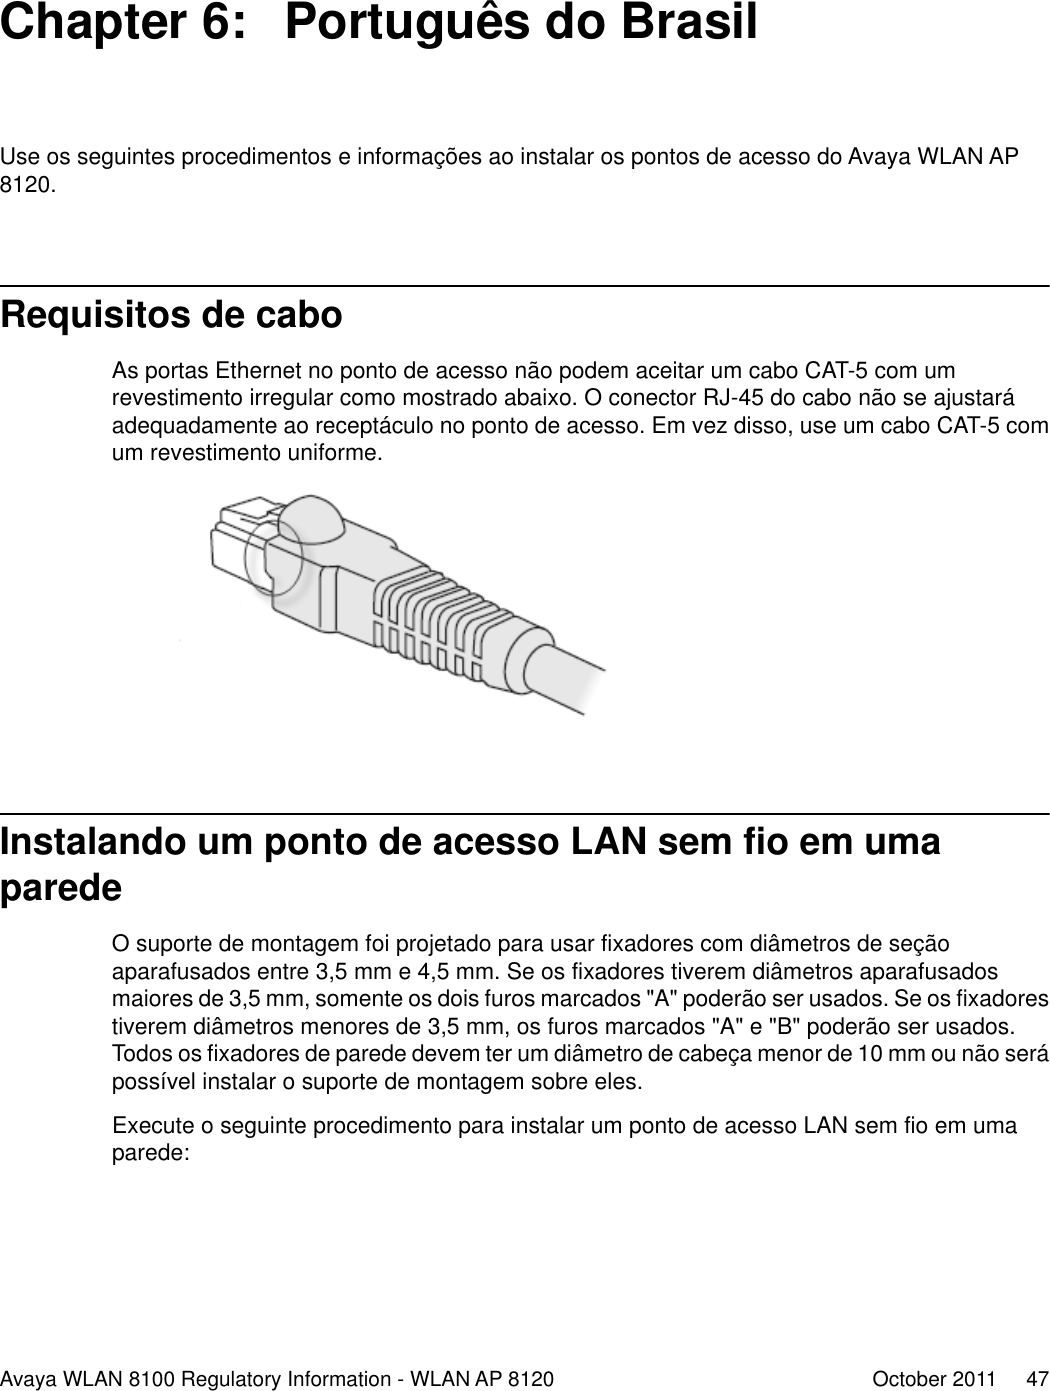 Chapter 6:  Português do BrasilUse os seguintes procedimentos e informações ao instalar os pontos de acesso do Avaya WLAN AP8120.Requisitos de caboAs portas Ethernet no ponto de acesso não podem aceitar um cabo CAT-5 com umrevestimento irregular como mostrado abaixo. O conector RJ-45 do cabo não se ajustaráadequadamente ao receptáculo no ponto de acesso. Em vez disso, use um cabo CAT-5 comum revestimento uniforme.Instalando um ponto de acesso LAN sem fio em umaparedeO suporte de montagem foi projetado para usar fixadores com diâmetros de seçãoaparafusados entre 3,5 mm e 4,5 mm. Se os fixadores tiverem diâmetros aparafusadosmaiores de 3,5 mm, somente os dois furos marcados &quot;A&quot; poderão ser usados. Se os fixadorestiverem diâmetros menores de 3,5 mm, os furos marcados &quot;A&quot; e &quot;B&quot; poderão ser usados.Todos os fixadores de parede devem ter um diâmetro de cabeça menor de 10 mm ou não serápossível instalar o suporte de montagem sobre eles.Execute o seguinte procedimento para instalar um ponto de acesso LAN sem fio em umaparede:Avaya WLAN 8100 Regulatory Information - WLAN AP 8120 October 2011     47